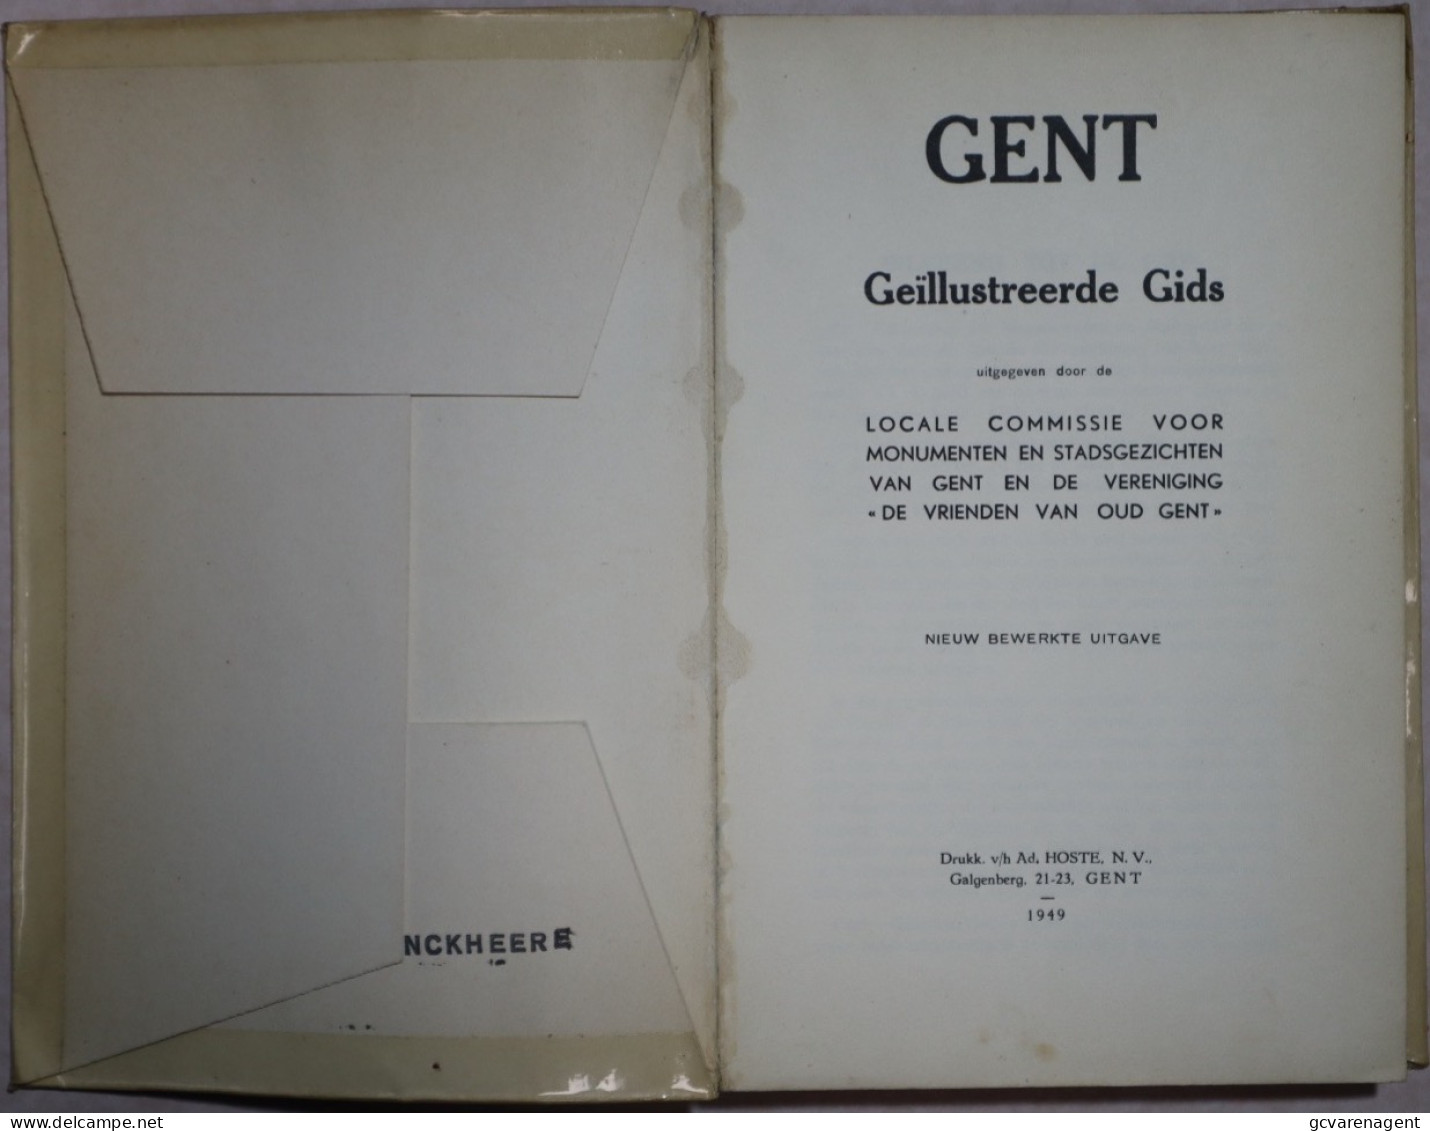 GENT 1949 GEÏLLUSTREEDE GIDS + BIJLAGE = 192 BLZ = 84 AFBEELDINGEN = GOEDE STAAT 220 X 115 MM. ZIE AFBEELDINGEN - Geschiedenis